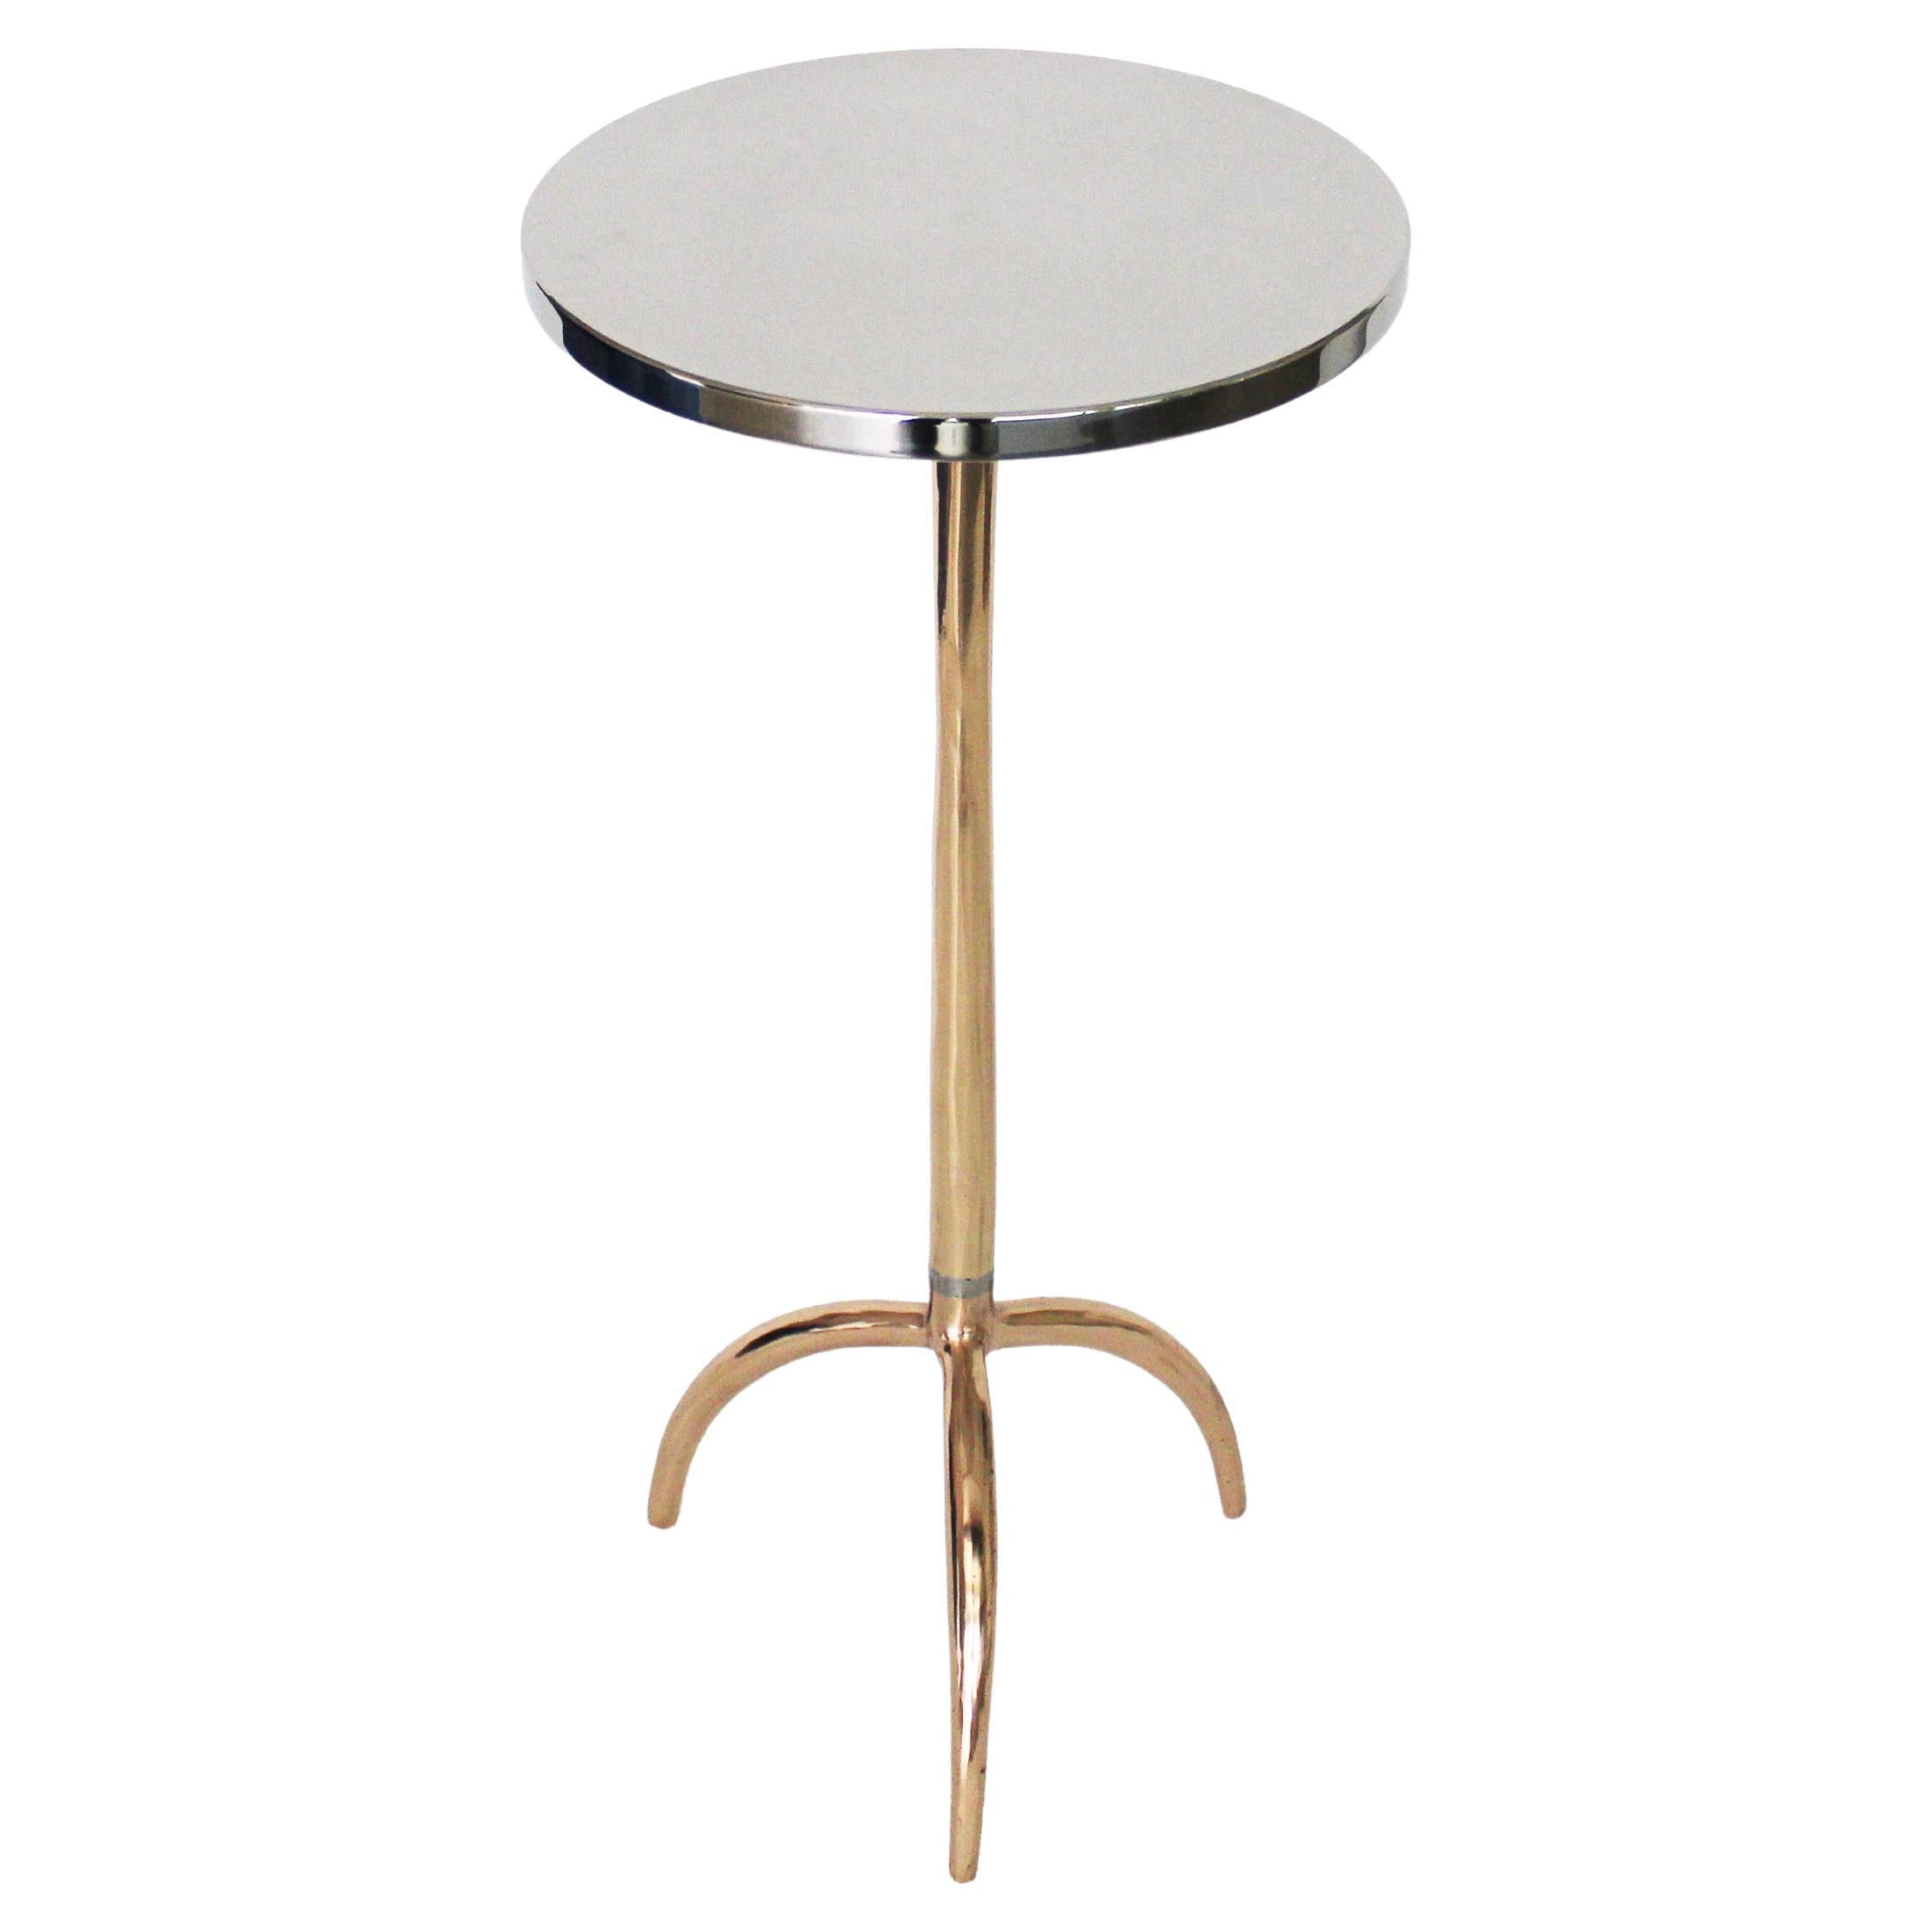 Table d'appoint Colla en bronze moulé et acier inoxydable de Studio Sunt